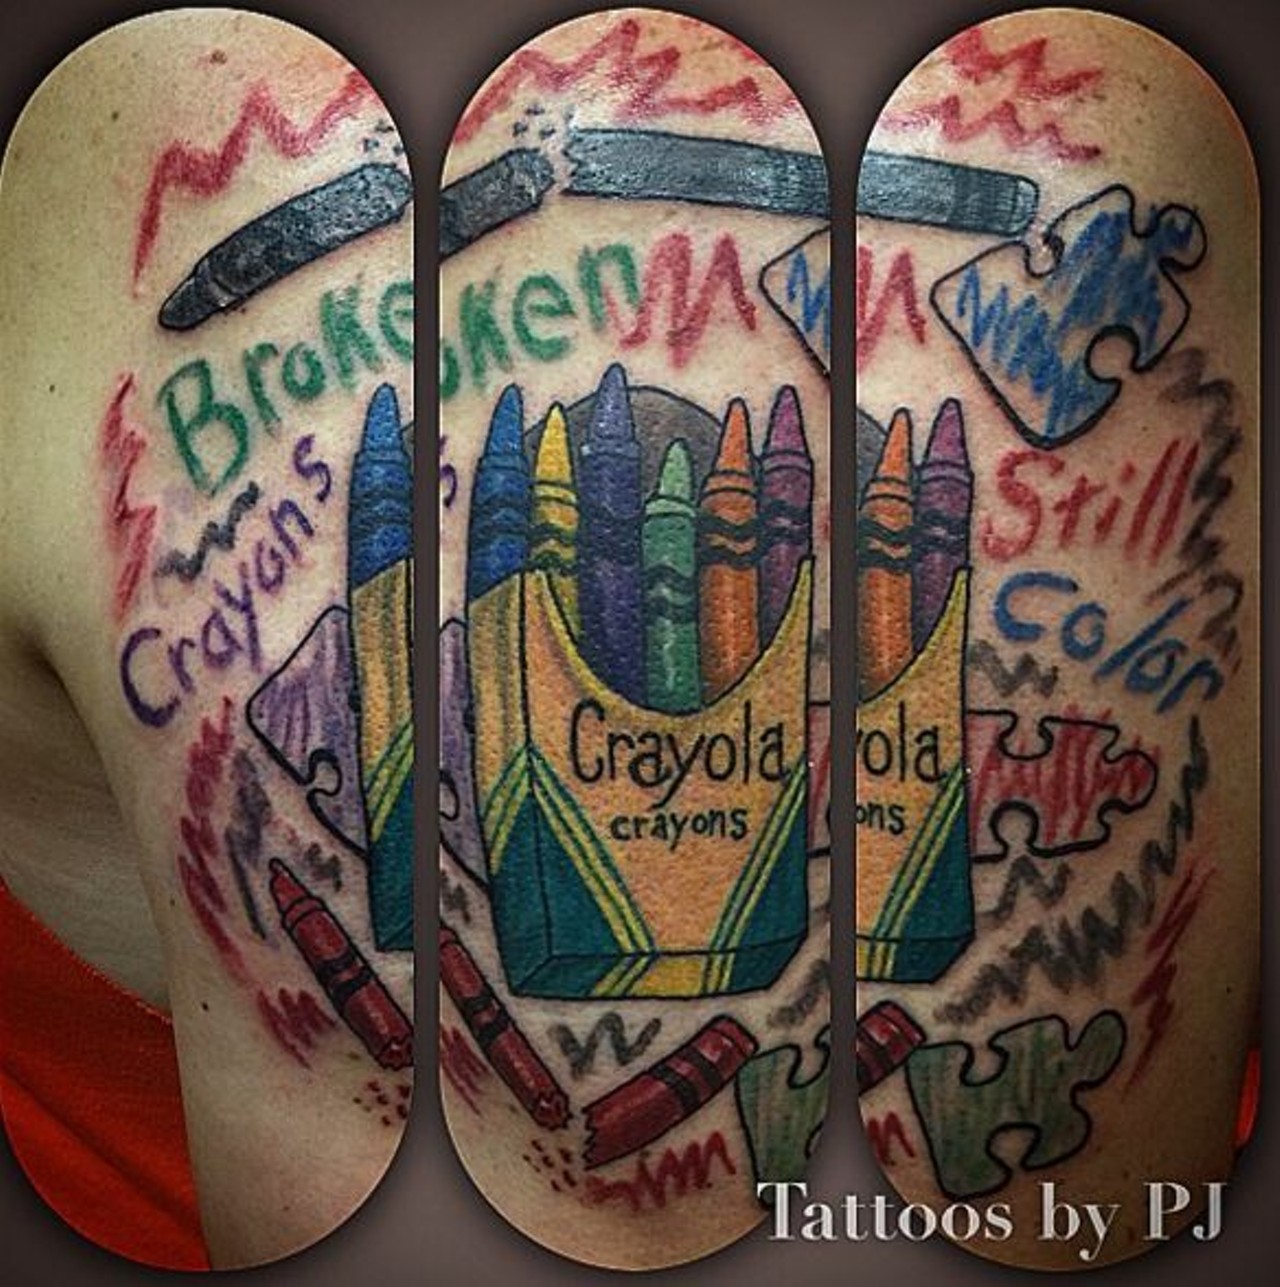 PJ Piel - tattoosbypjstl
St. Louis Ink Tattoo Studio 2
12763 New Halls Ferry Road, Florissant, MO 63033
(314) 395-2225